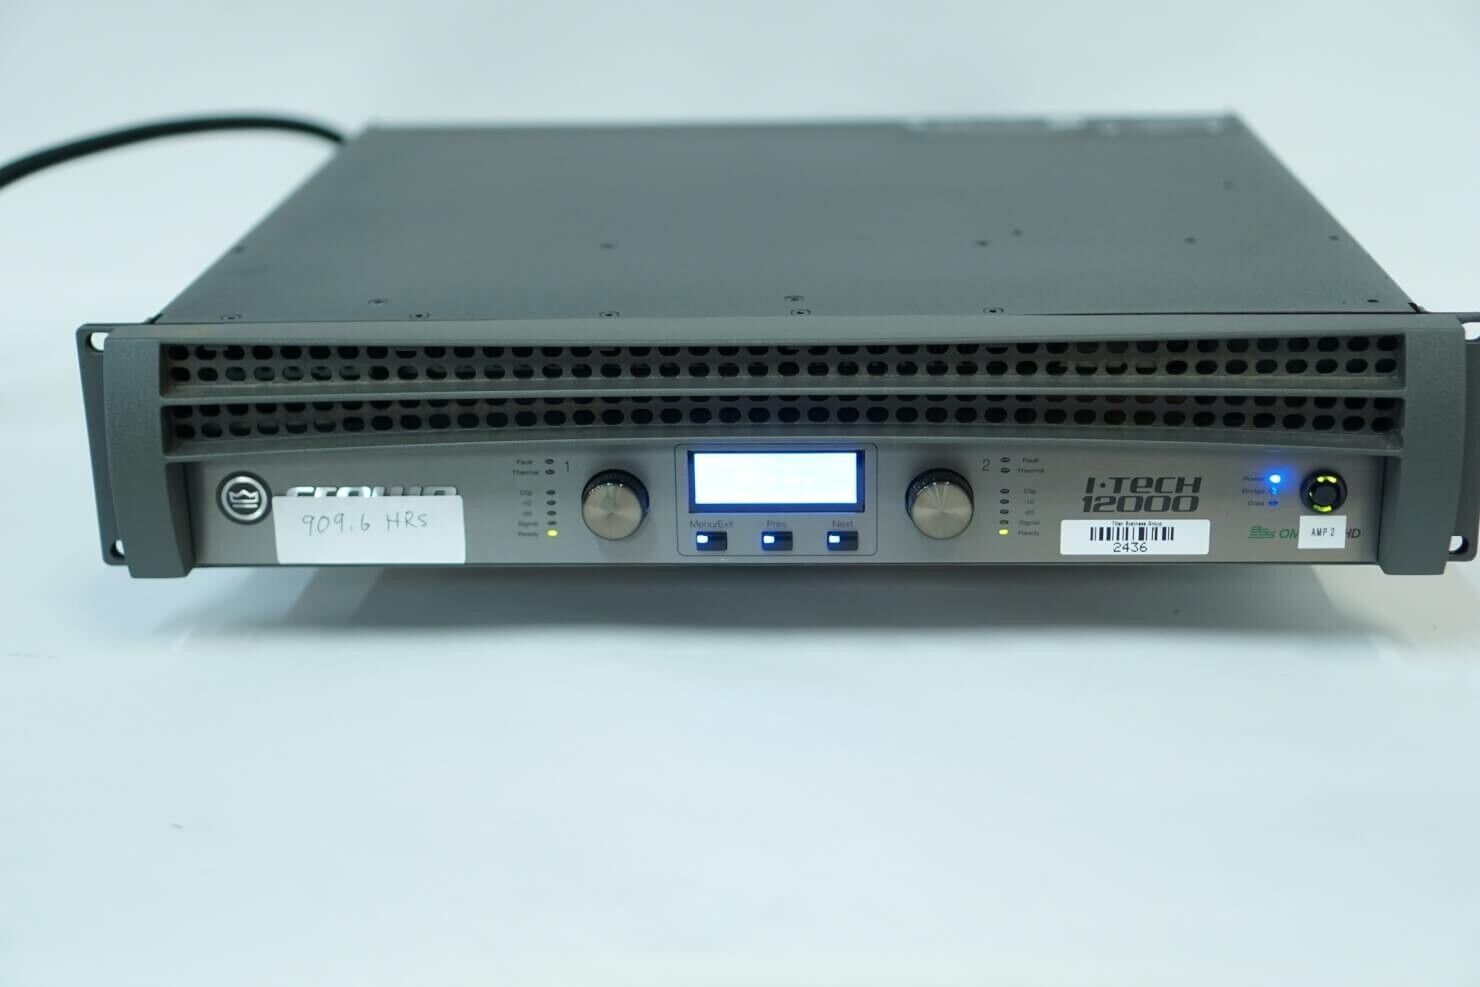 Crown I-tech 12000hd Power Amplifier